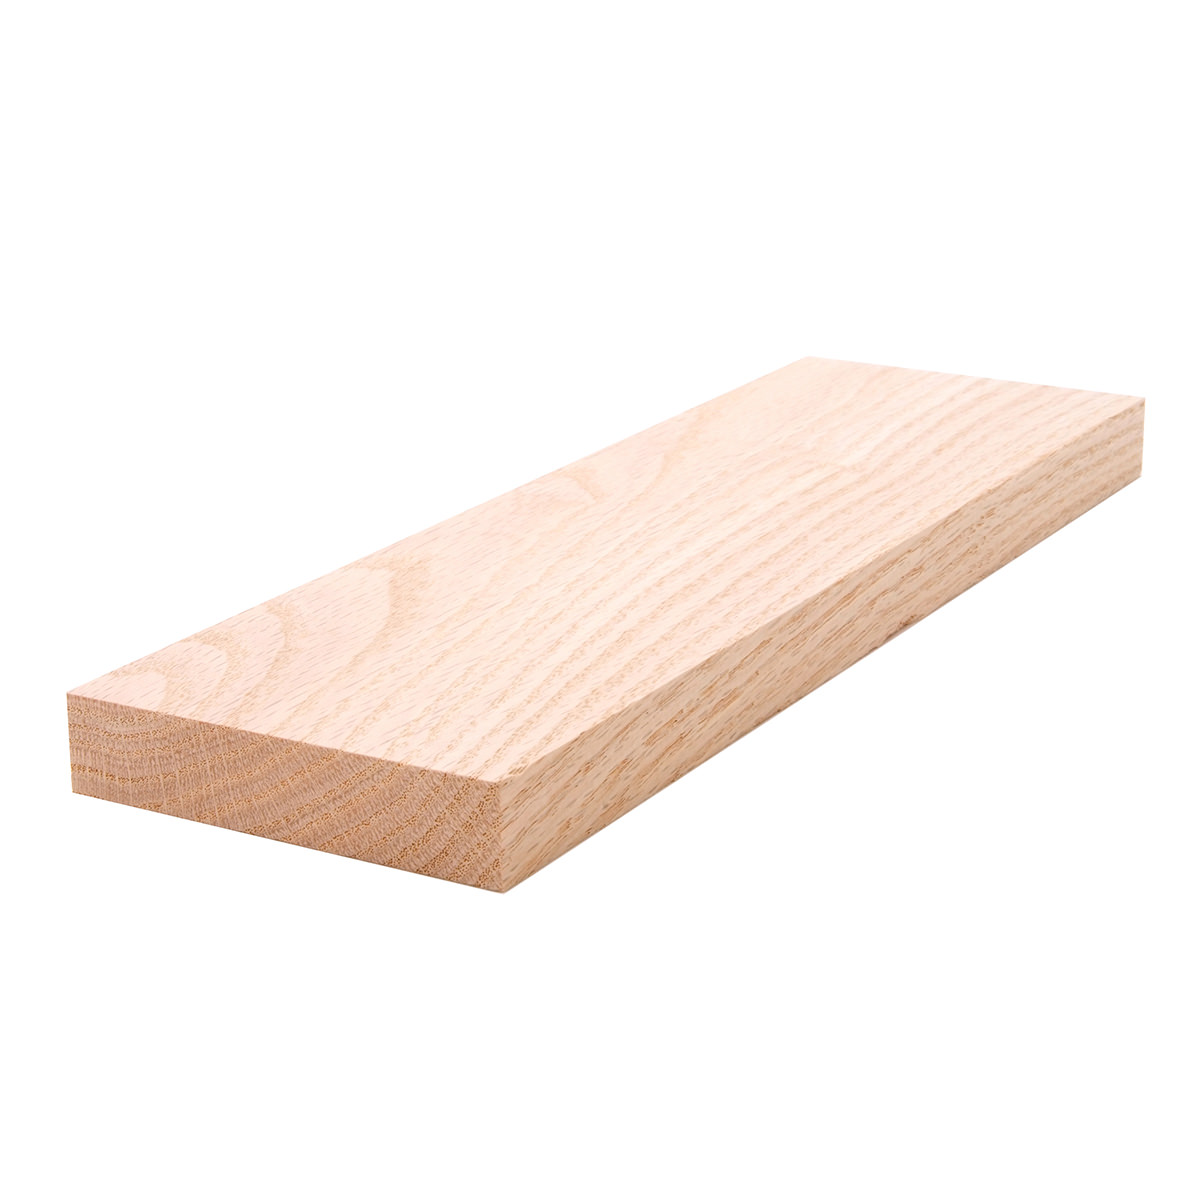 White Ash Lumber Board 3/4 x 2 4 Pcs 3/4 x 2 x 18 